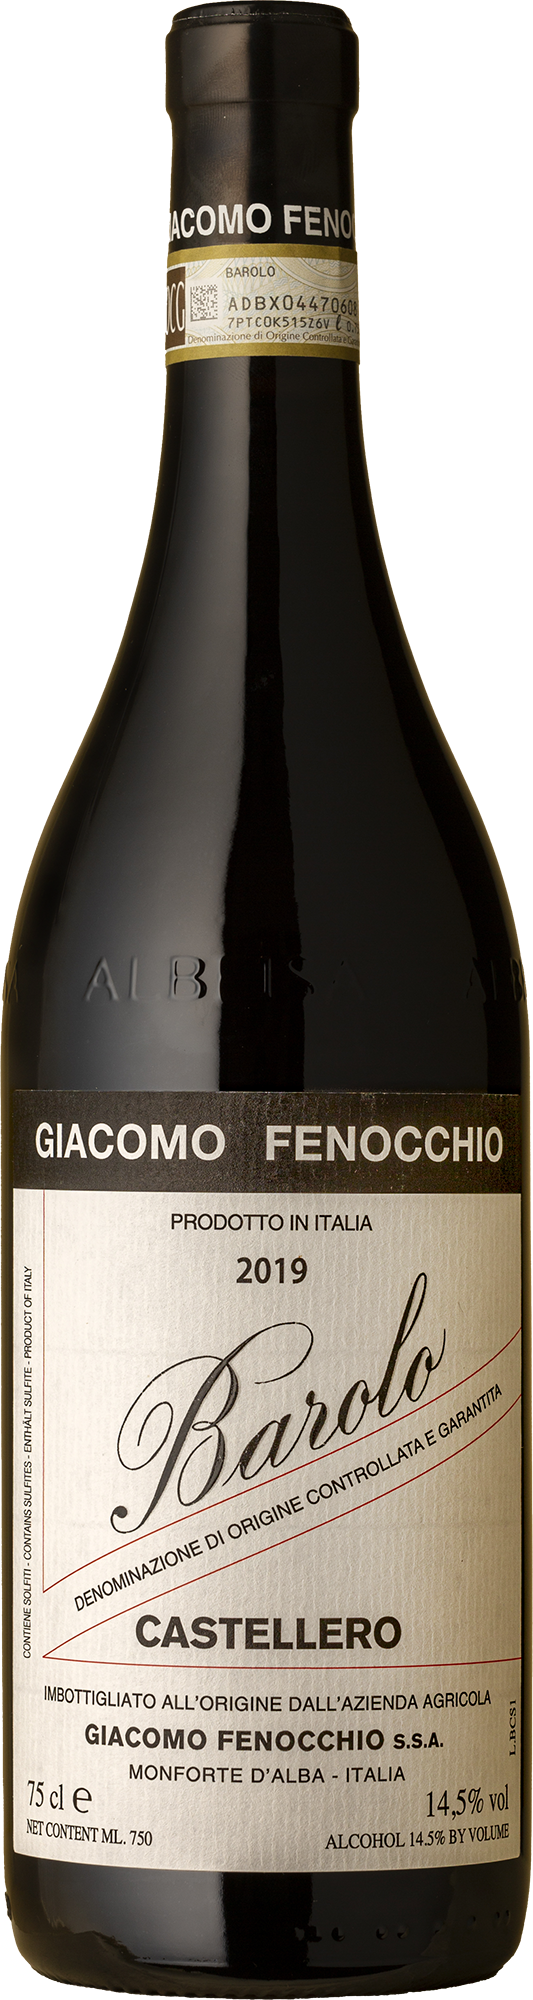 Giacomo Fenocchio - Barolo Castellero Nebbiolo 2019 Red Wine